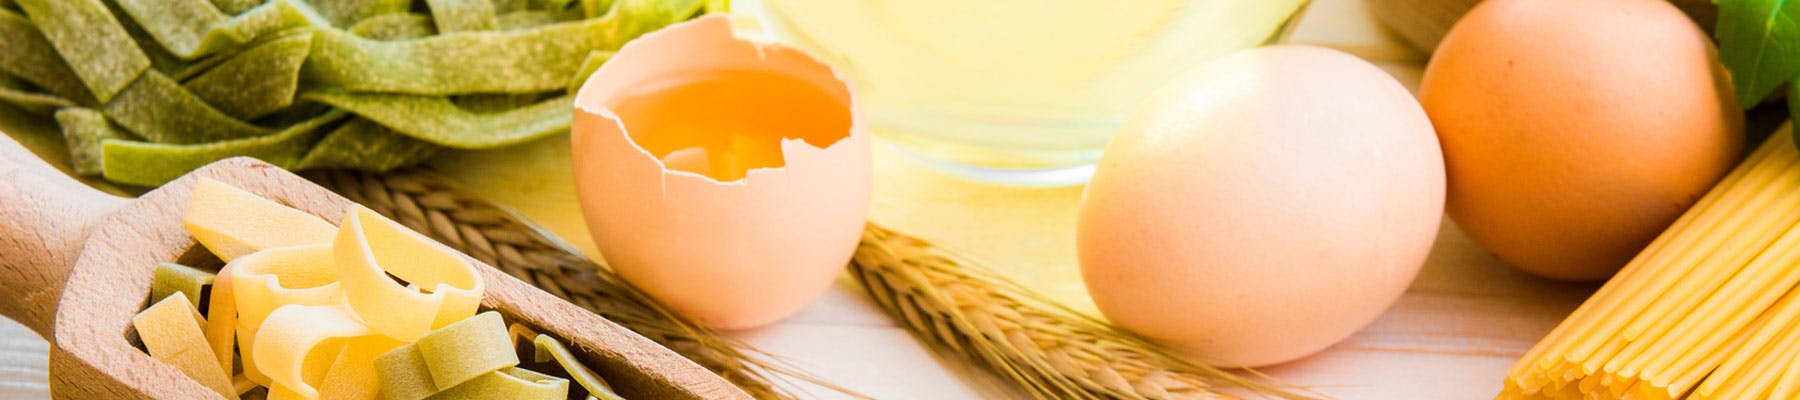 L'uovo: uno degli alimenti più pregiati.